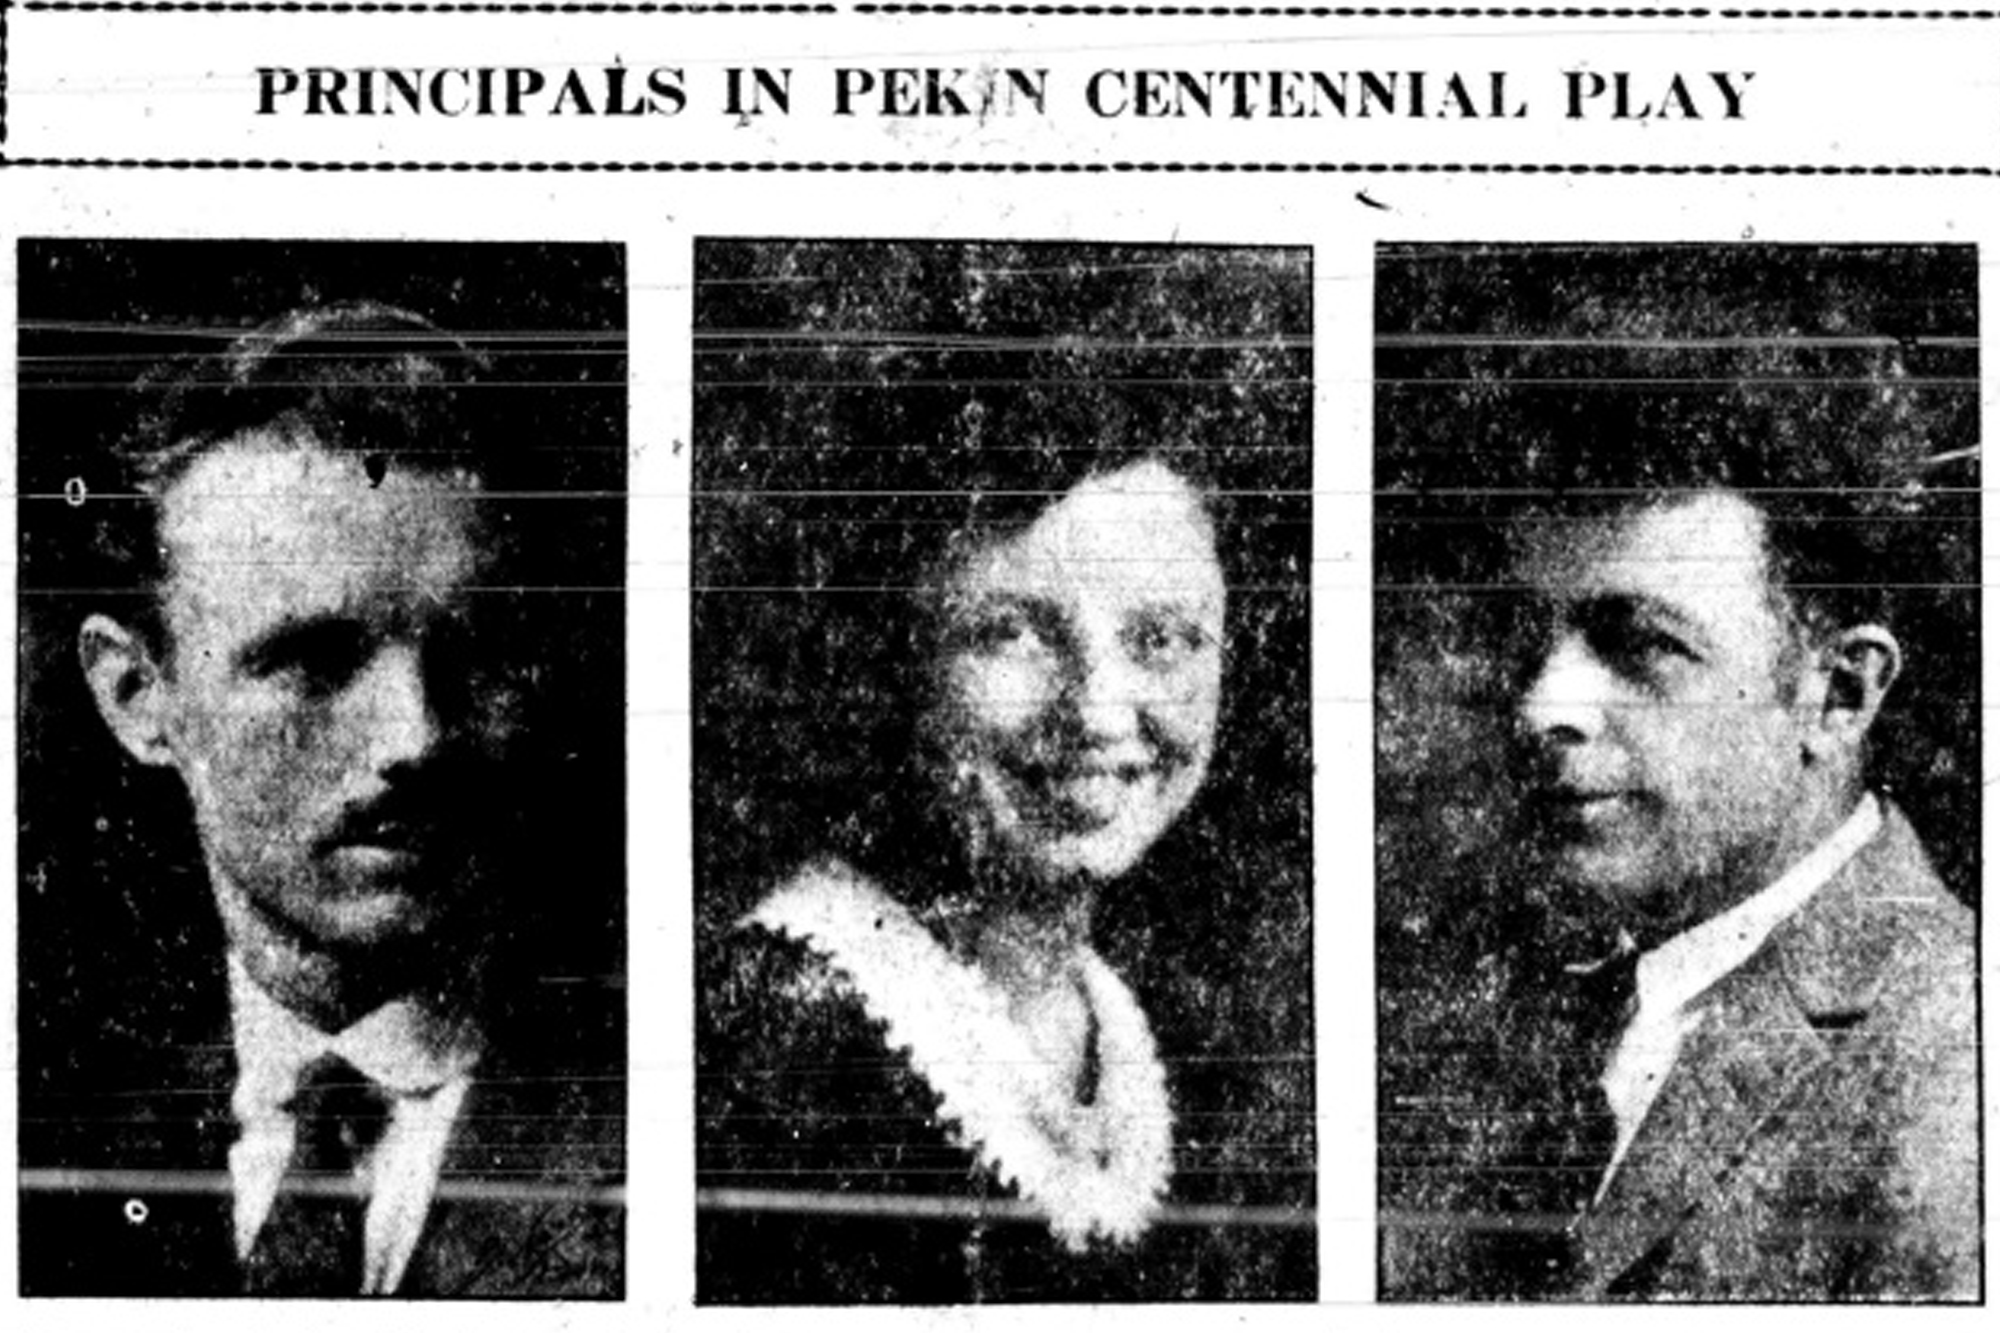 Tuesday, July 1, 1924 newspaper article featuring Pekin's Centennial play